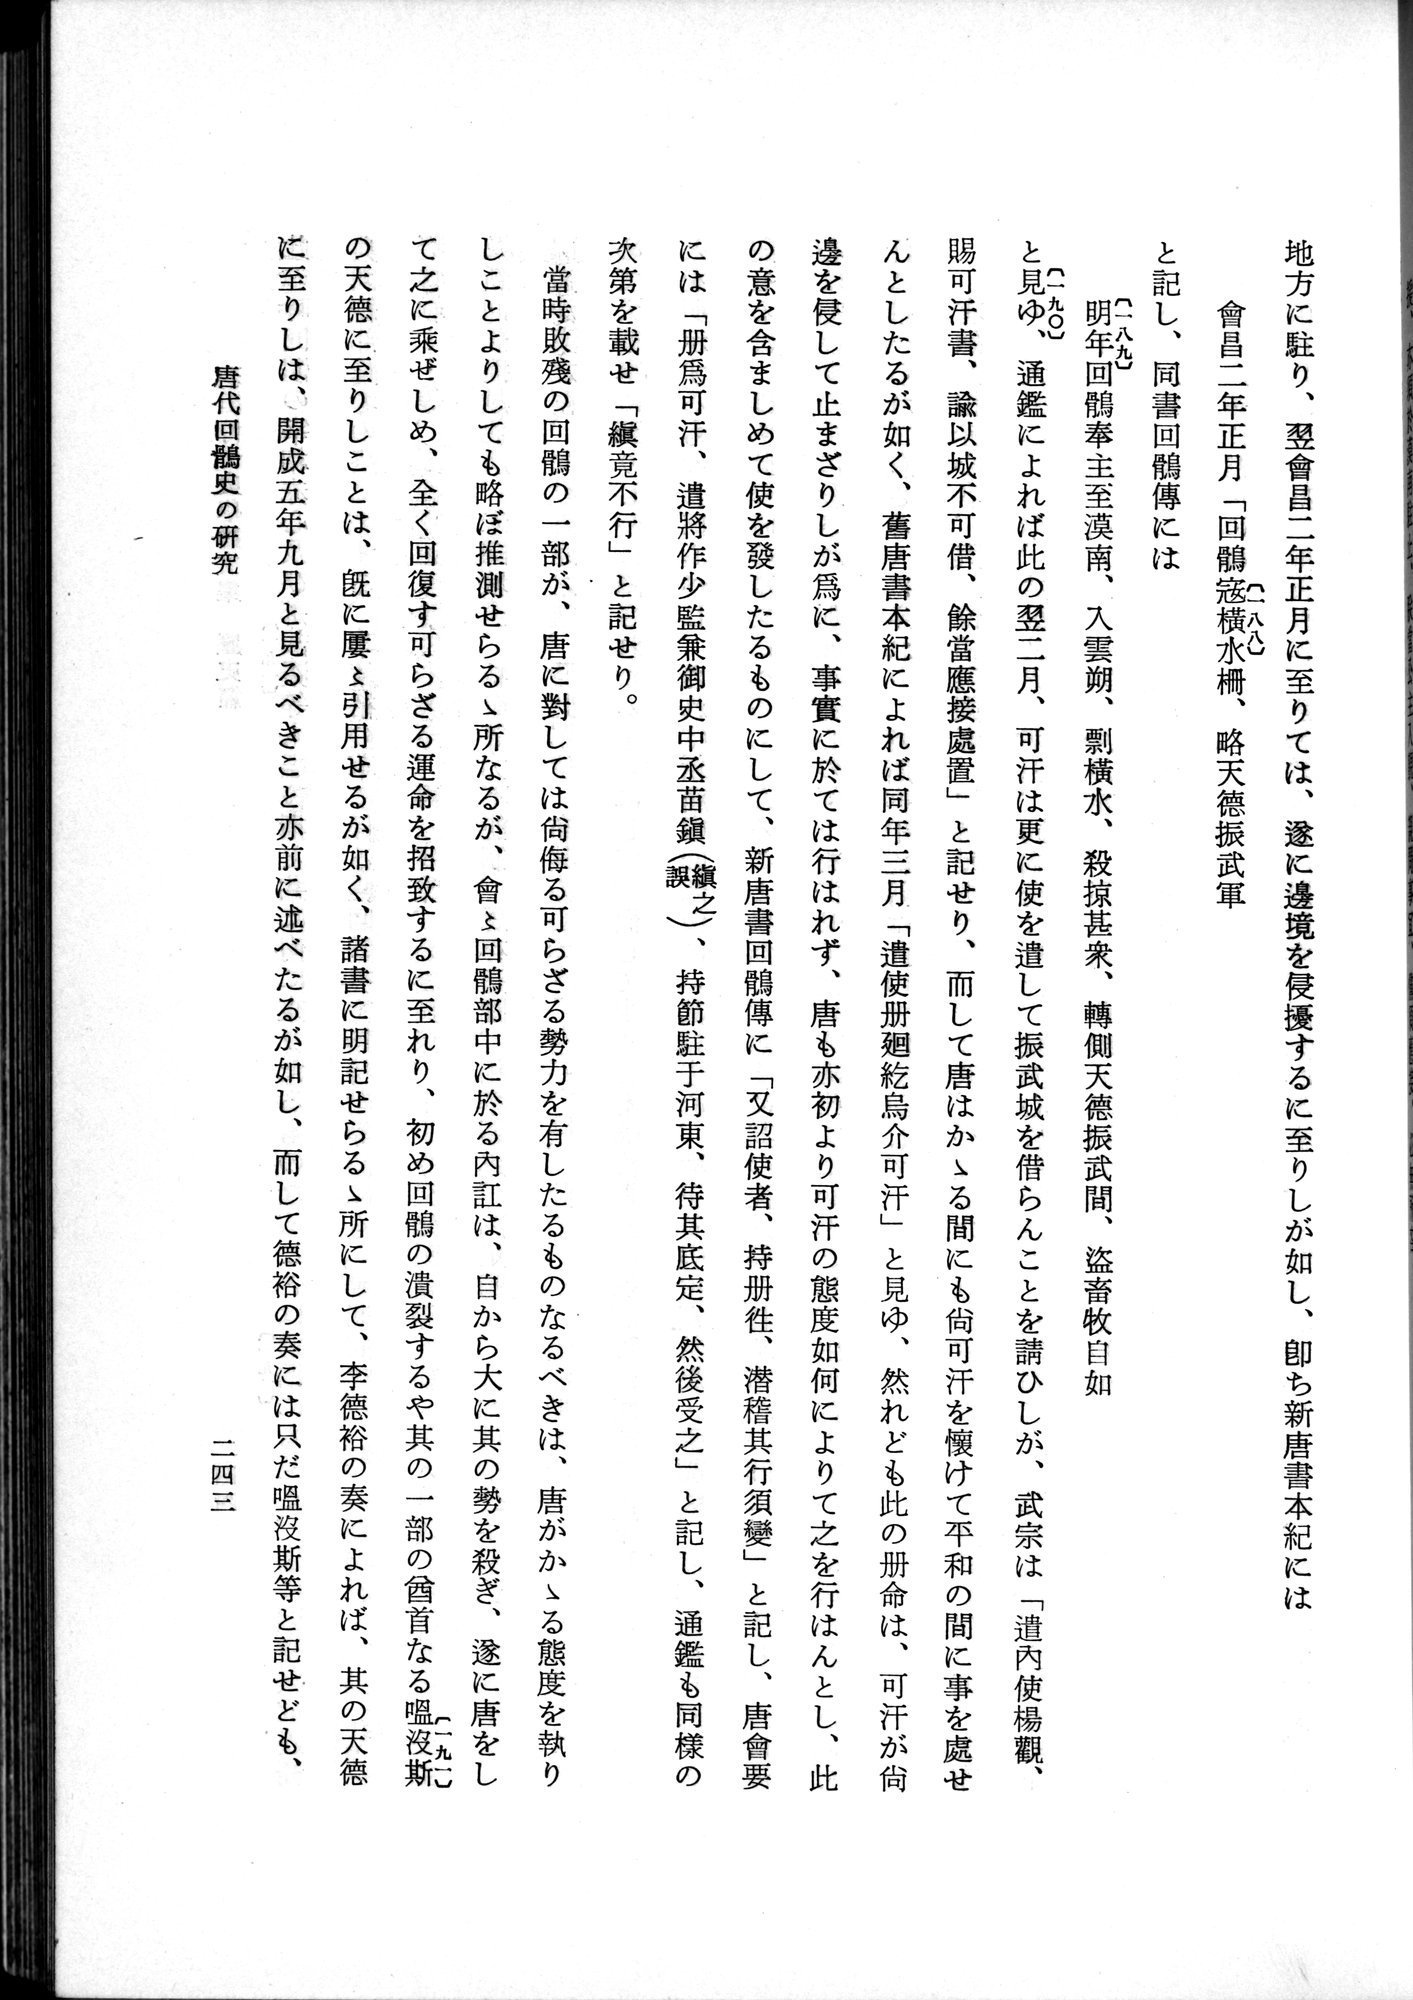 羽田博士史学論文集 : vol.1 / Page 281 (Grayscale High Resolution Image)